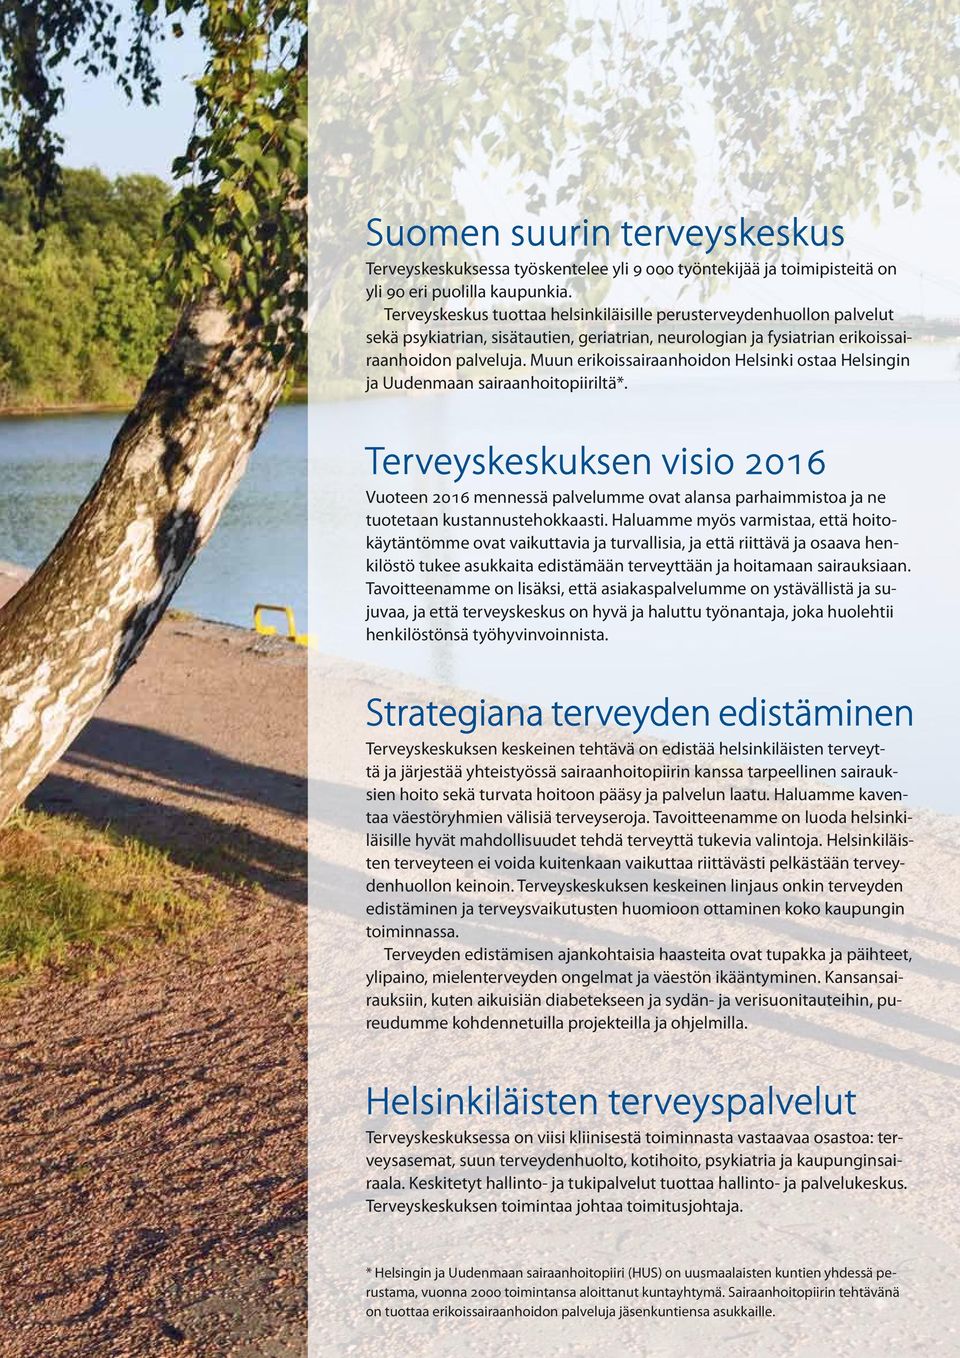 Muun erikoissairaanhoidon Helsinki ostaa Helsingin ja Uudenmaan sairaanhoitopiiriltä*.